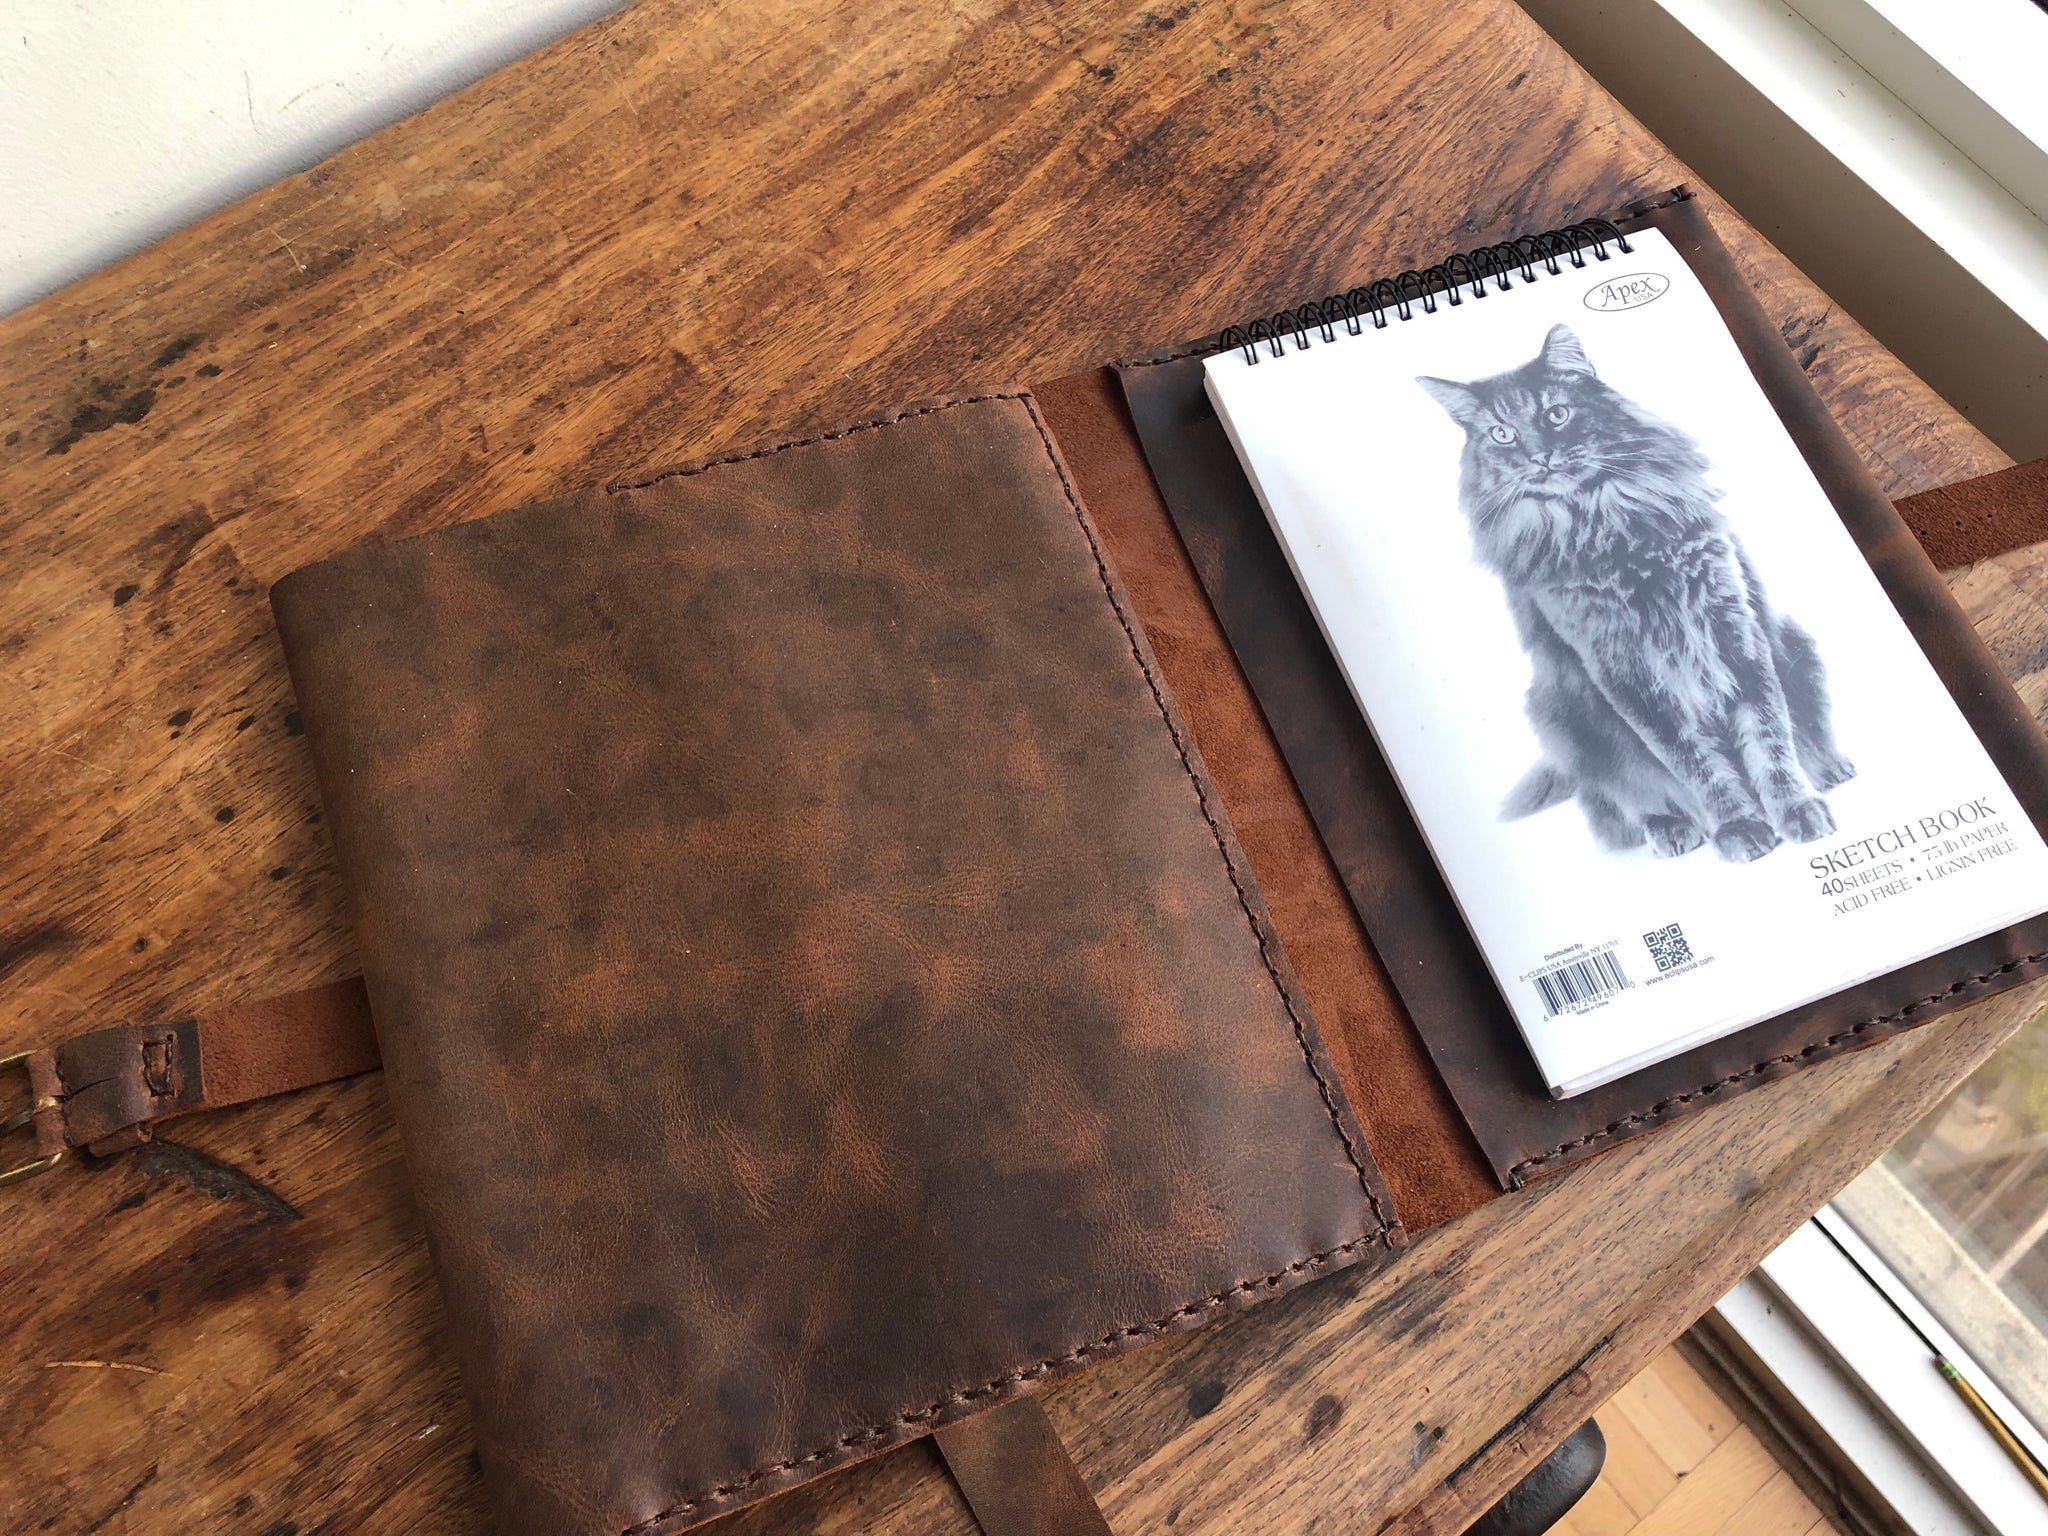 Large sketchbook, Travel artist sketch pad, Pencil holder, Travel  sketchbooks portfolio, Pen case notebook, Large leather portfolio